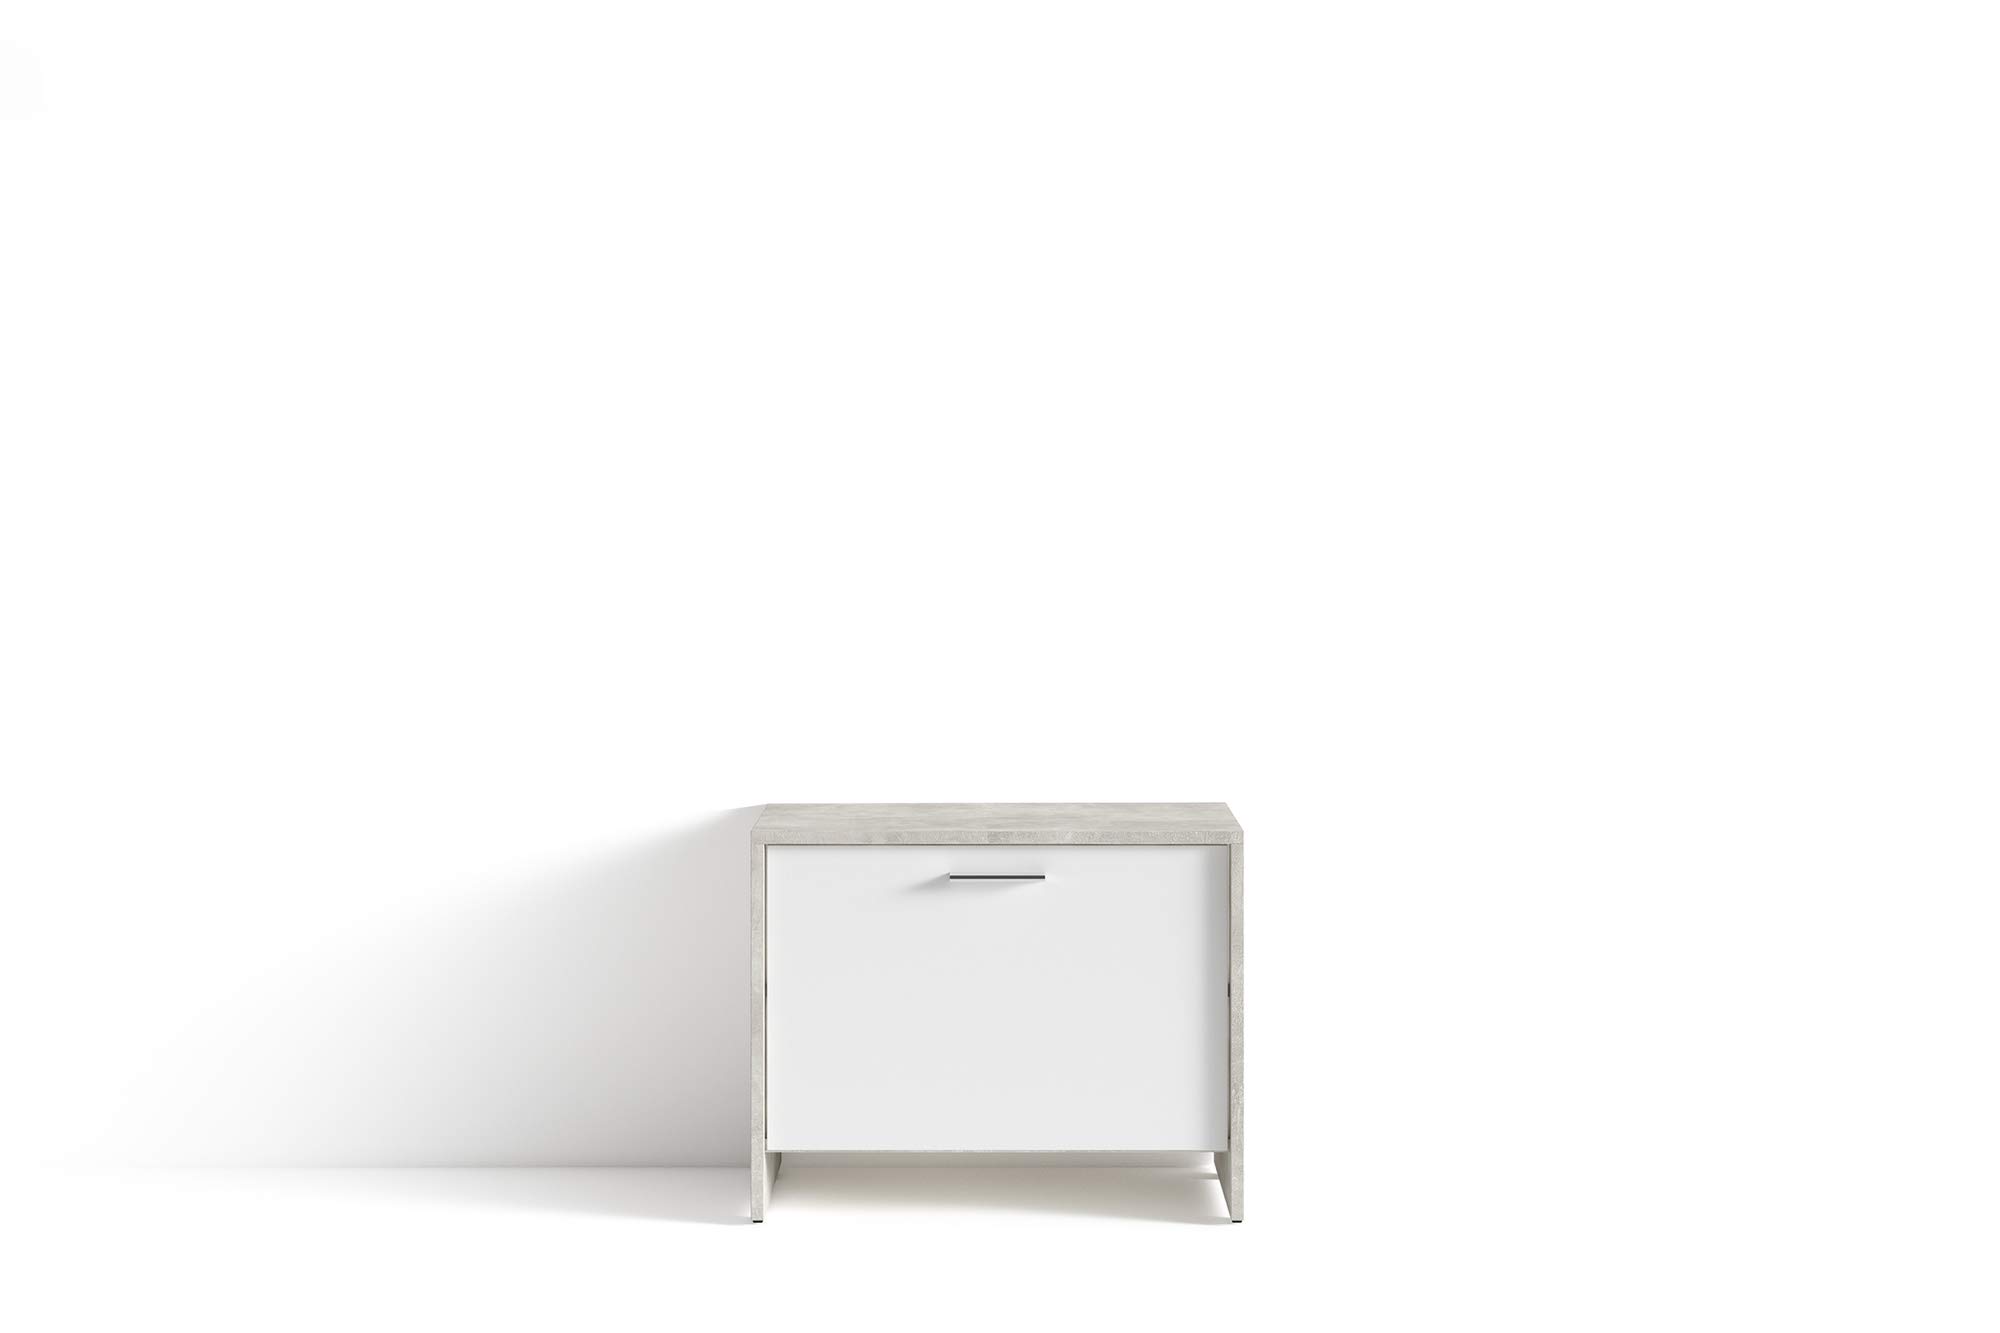 HOMEXPERTS Sitzbank BENNO / Schuhschrank in grau Beton-Optik / Front weiß / kleine Flur-Kommode mit Klappe und Einlegeboden / 60 x 48 x 35 cm (BxHxT)